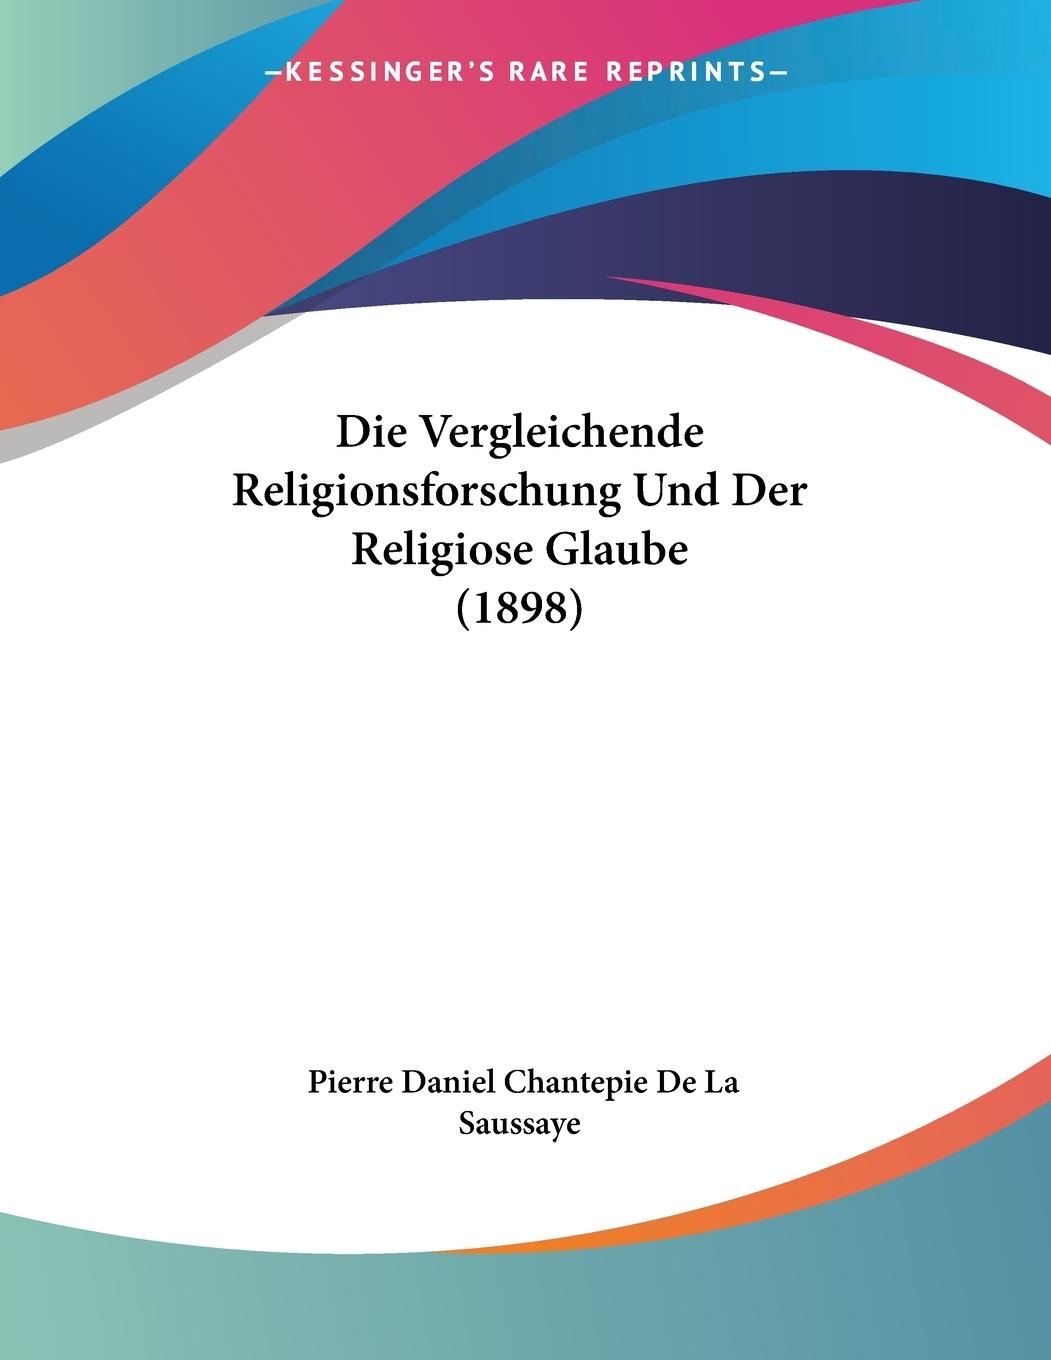 Die Vergleichende Religionsforschung Und Der Religiose Glaube (1898) - De La Saussaye, Pierre Daniel Chantepie